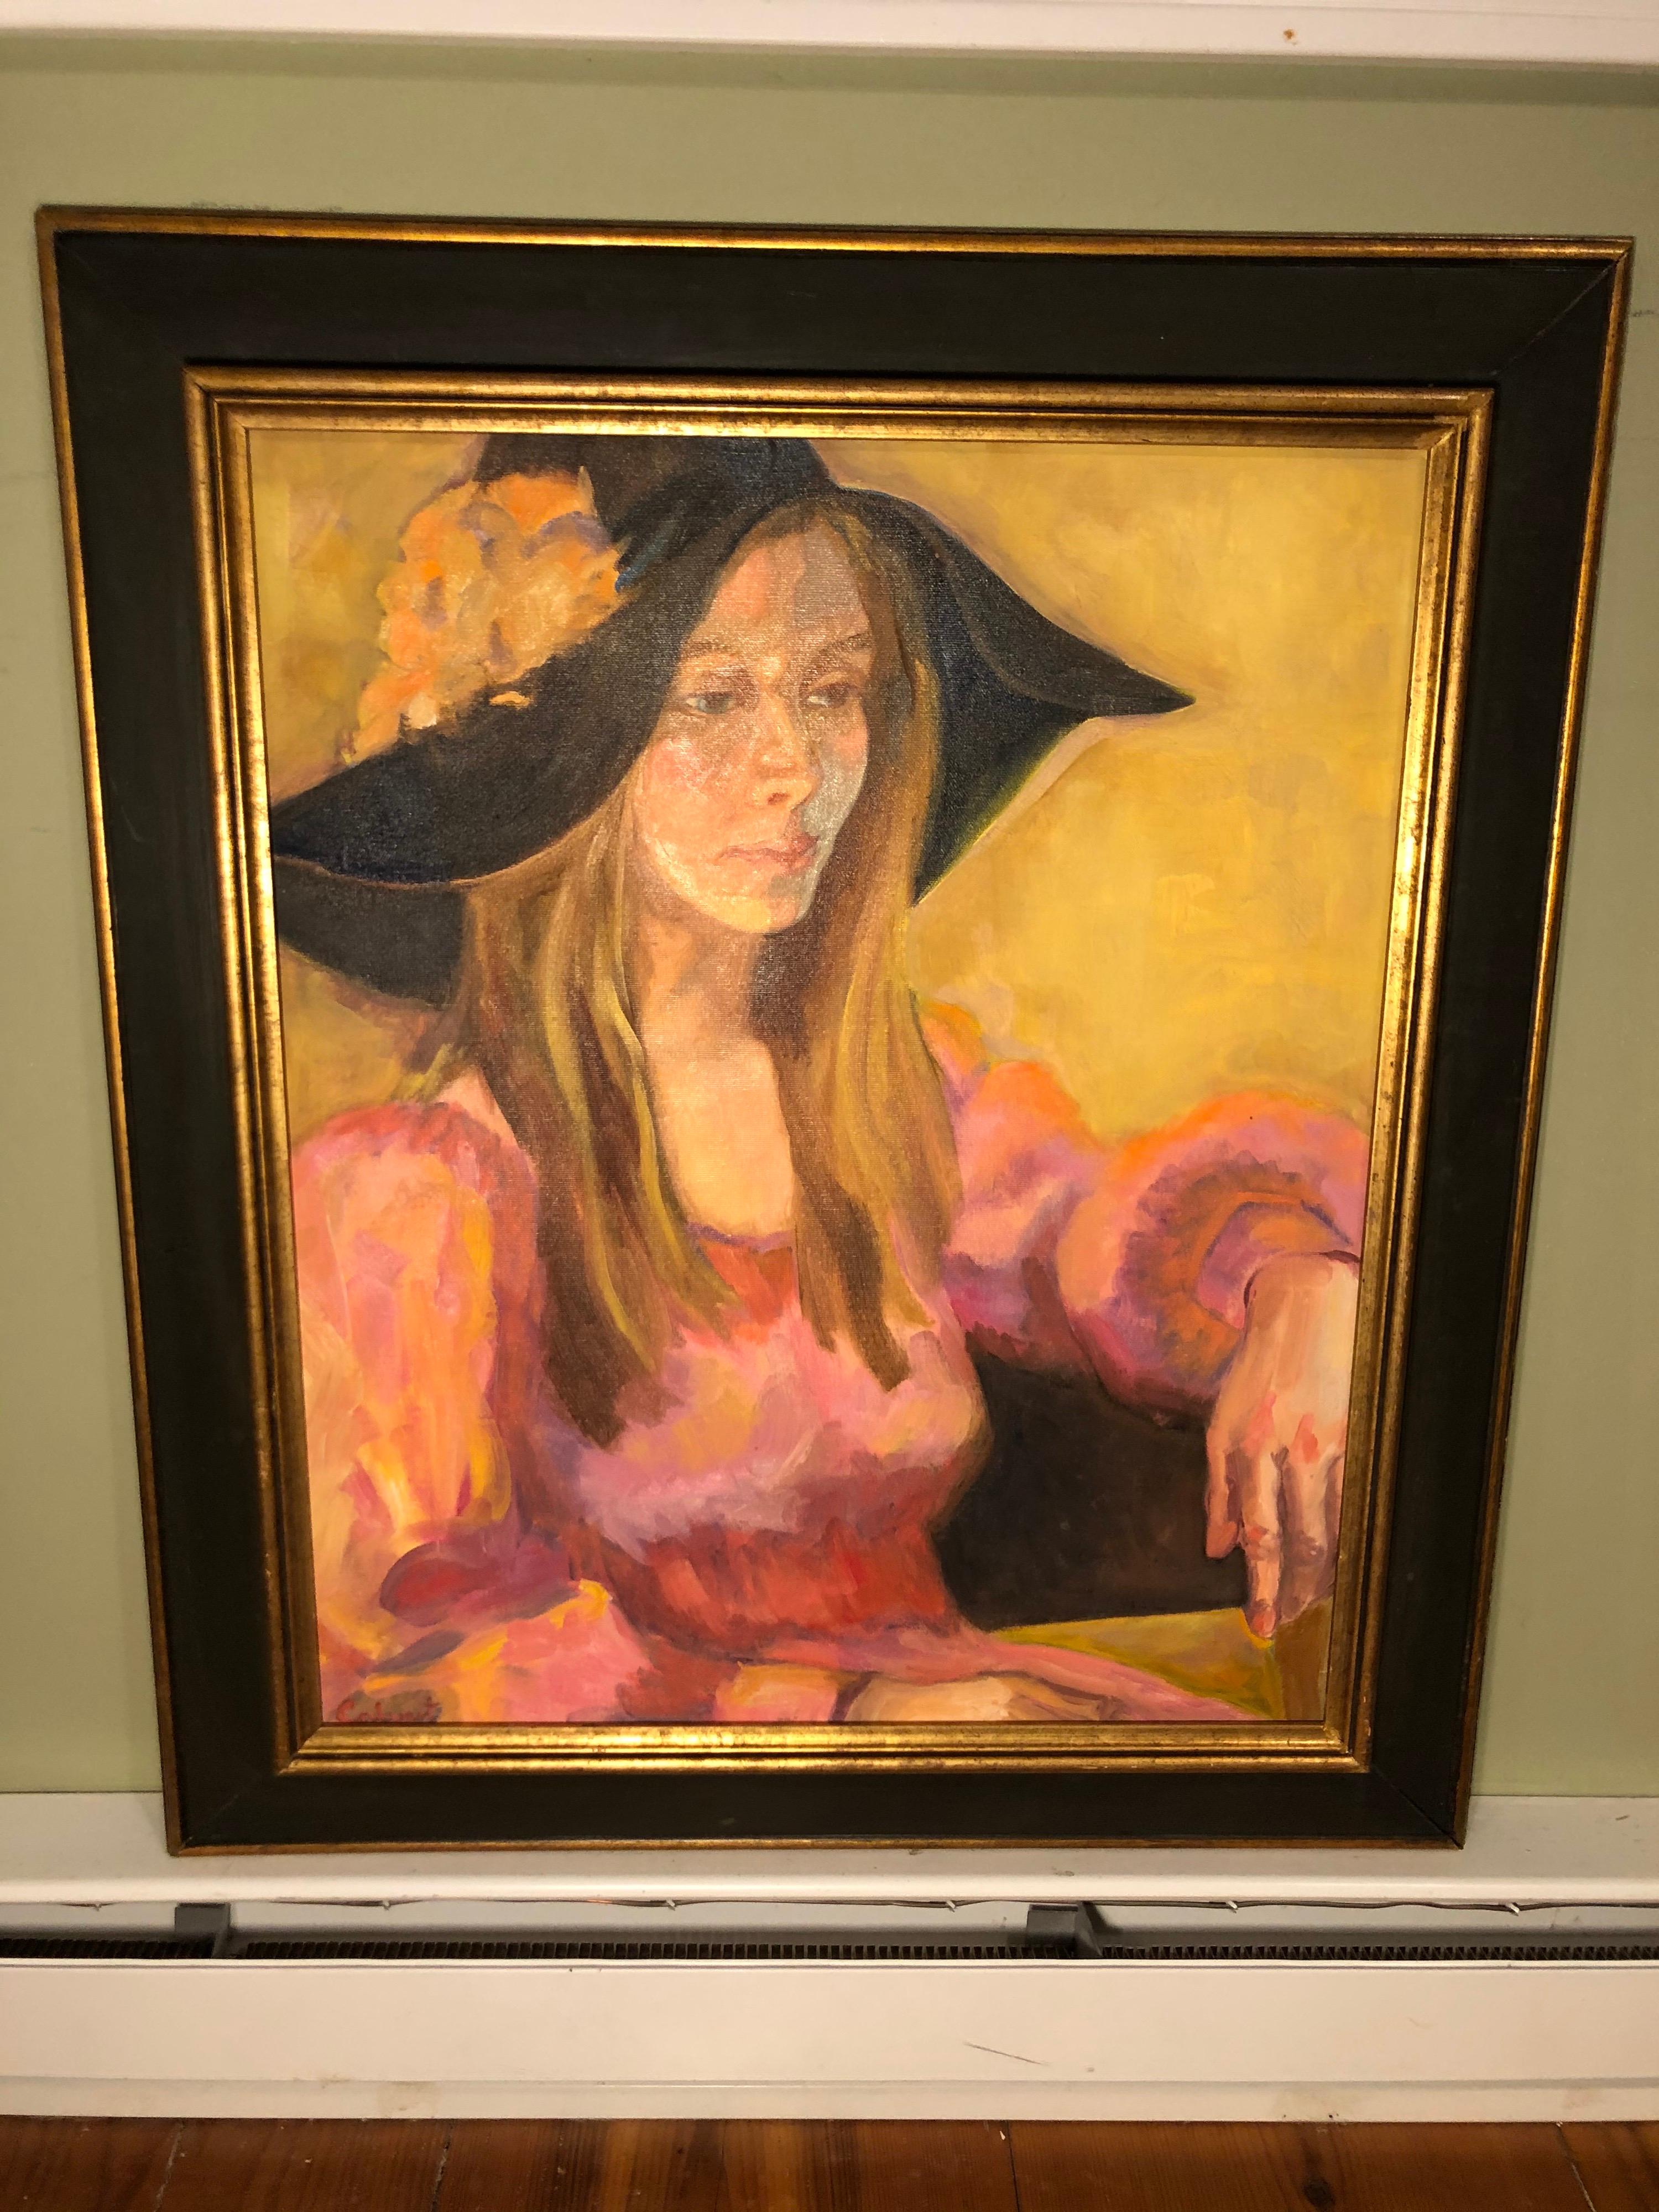 1977 Joni Mitchell Style Portrait Signiert Peggy Calvart. Öl auf Leinwand. Die Künstlerin sieht der Folksängerin Joni Mitchell sehr ähnlich.
Stil der 1970er Jahre mit Hut und Kleidung. Untergebracht in einem dramatischen schwarz-goldenen Rahmen.